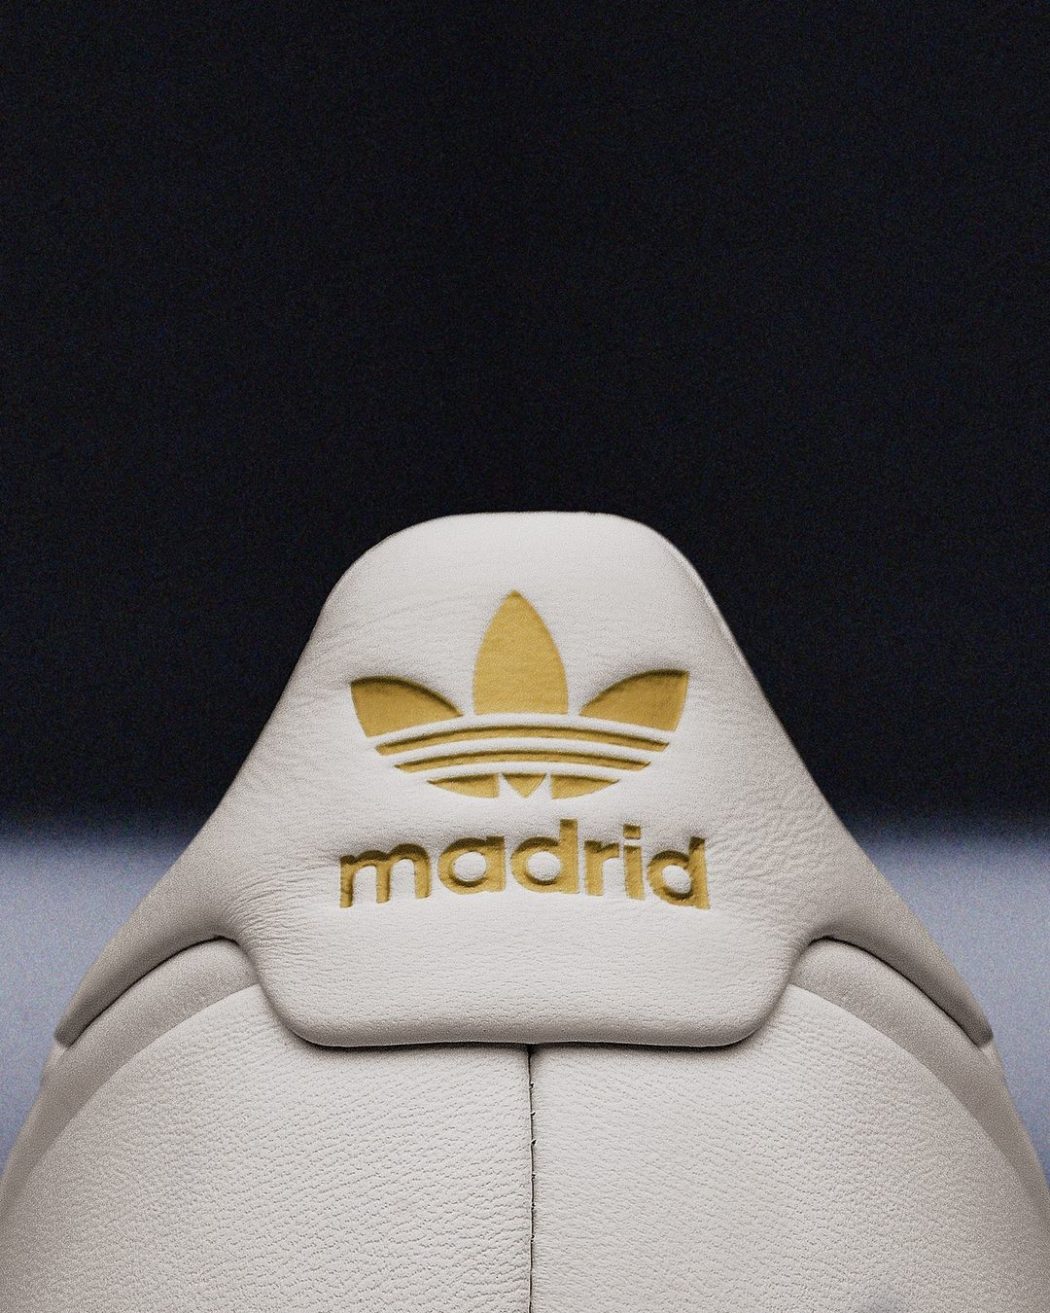 BSTN celebra a história do Real Madrid no basquete com um Adidas Rivalry 86 exclusivo